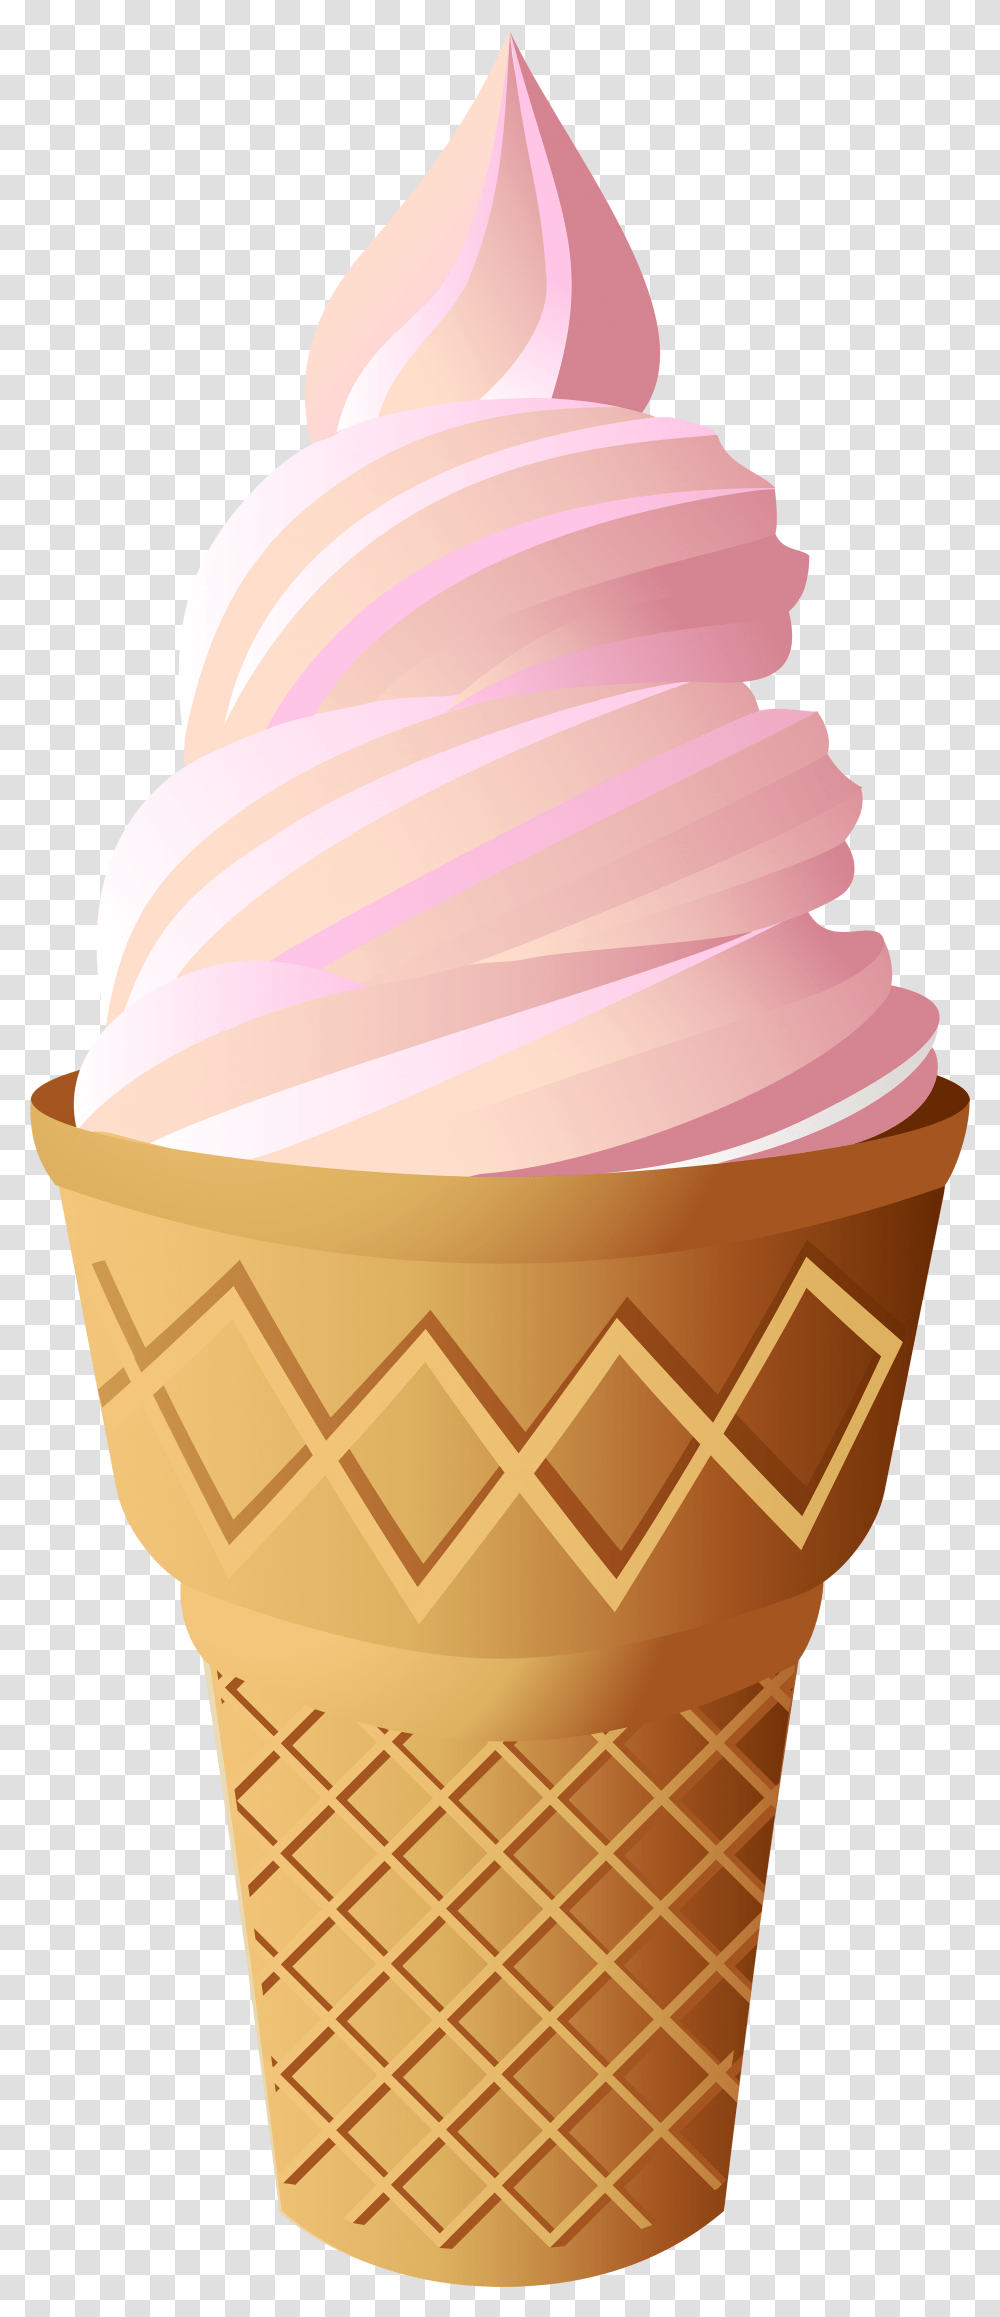 Pink Ice Cream Cone Clip Art Vanilla Ice Cream, Dessert, Food, Creme, Wedding Cake Transparent Png